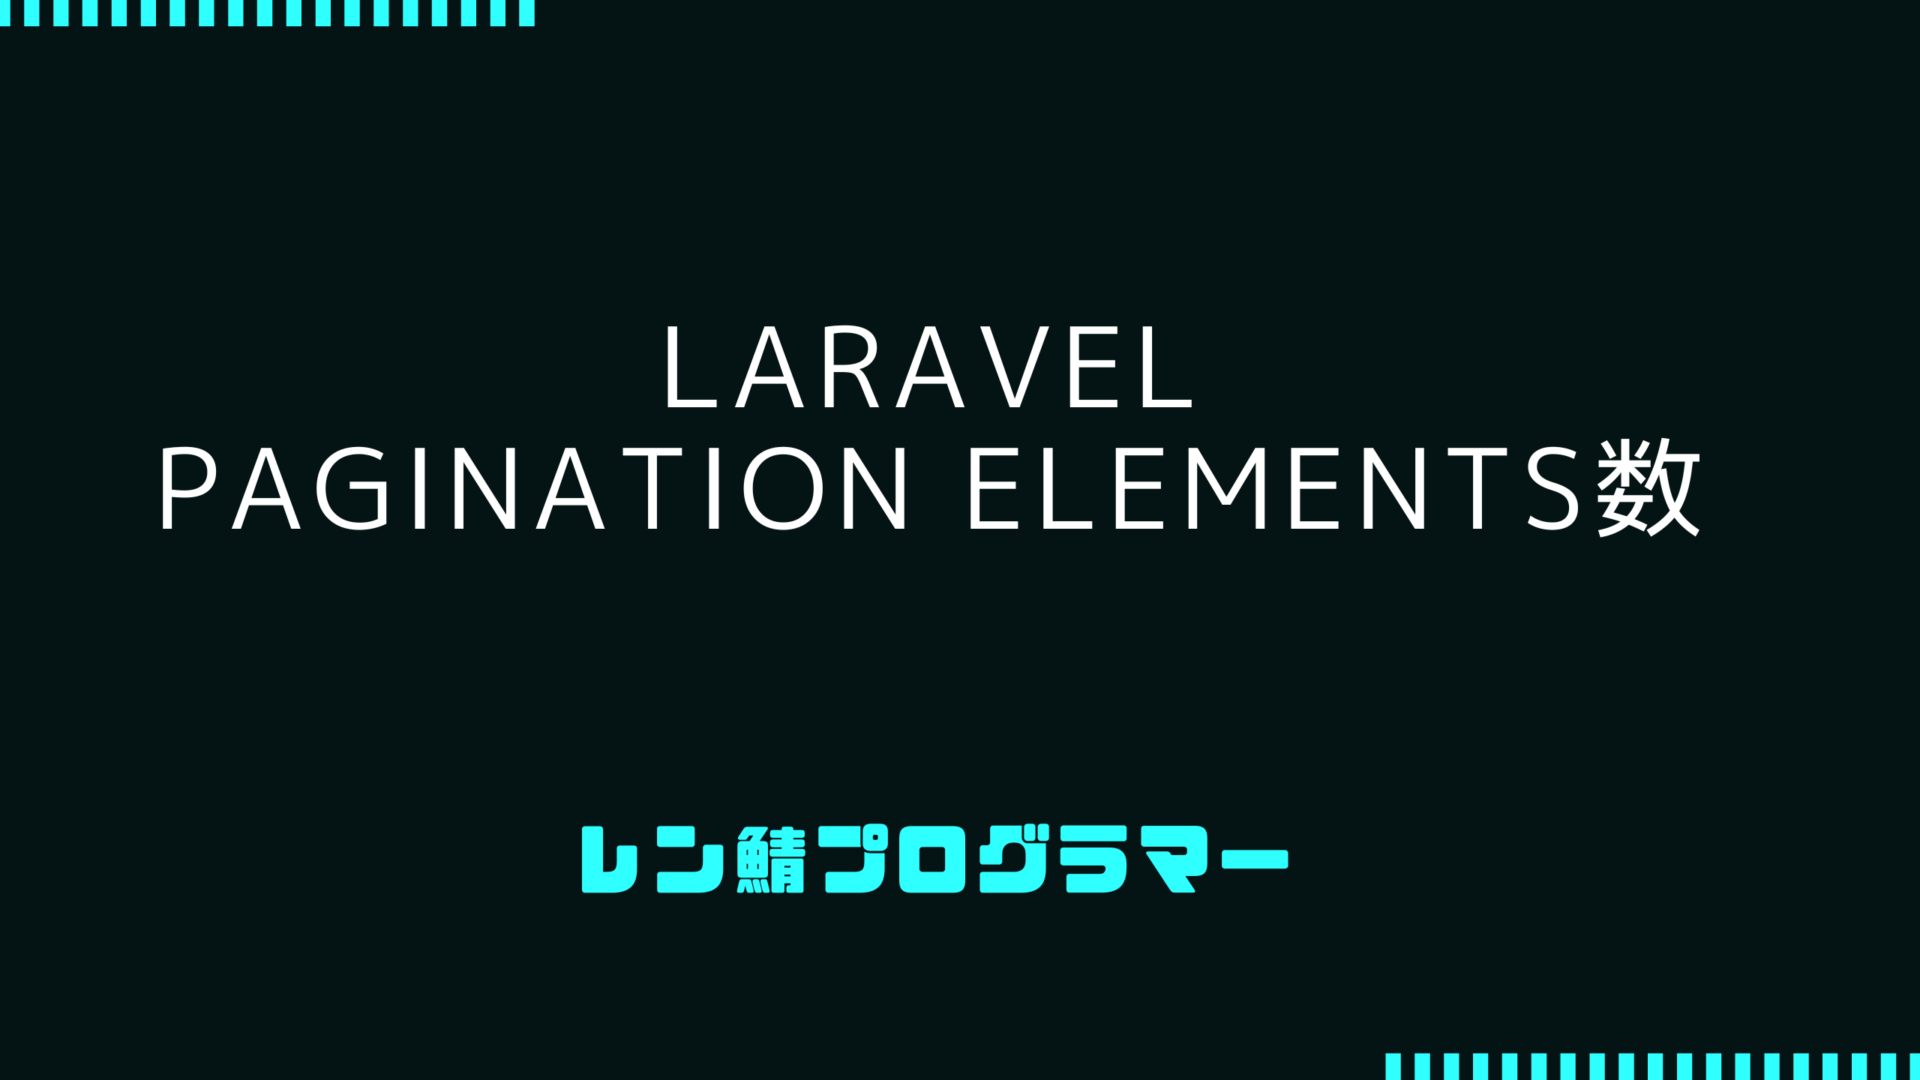 LaravelのPagination Elements数を調整する方法